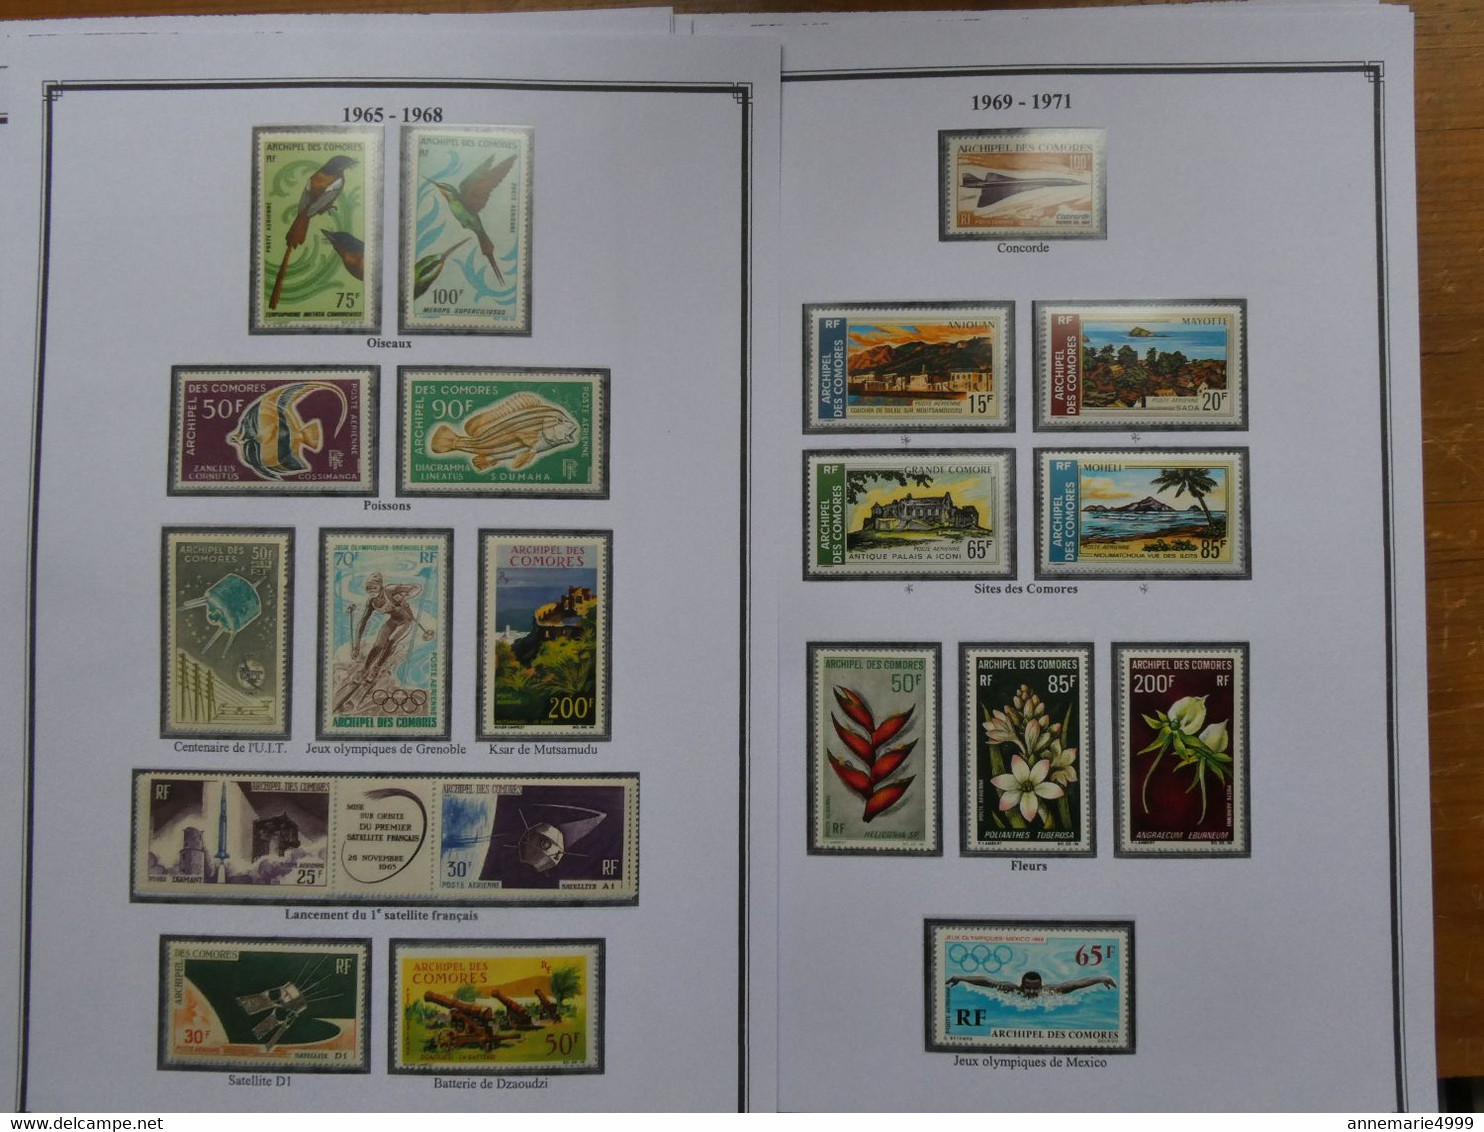 ARCHIPEL DES COMORES Complet Neufs sans charnières exceptés une dizaine de timbres Cote 1200 € Voir commentaire